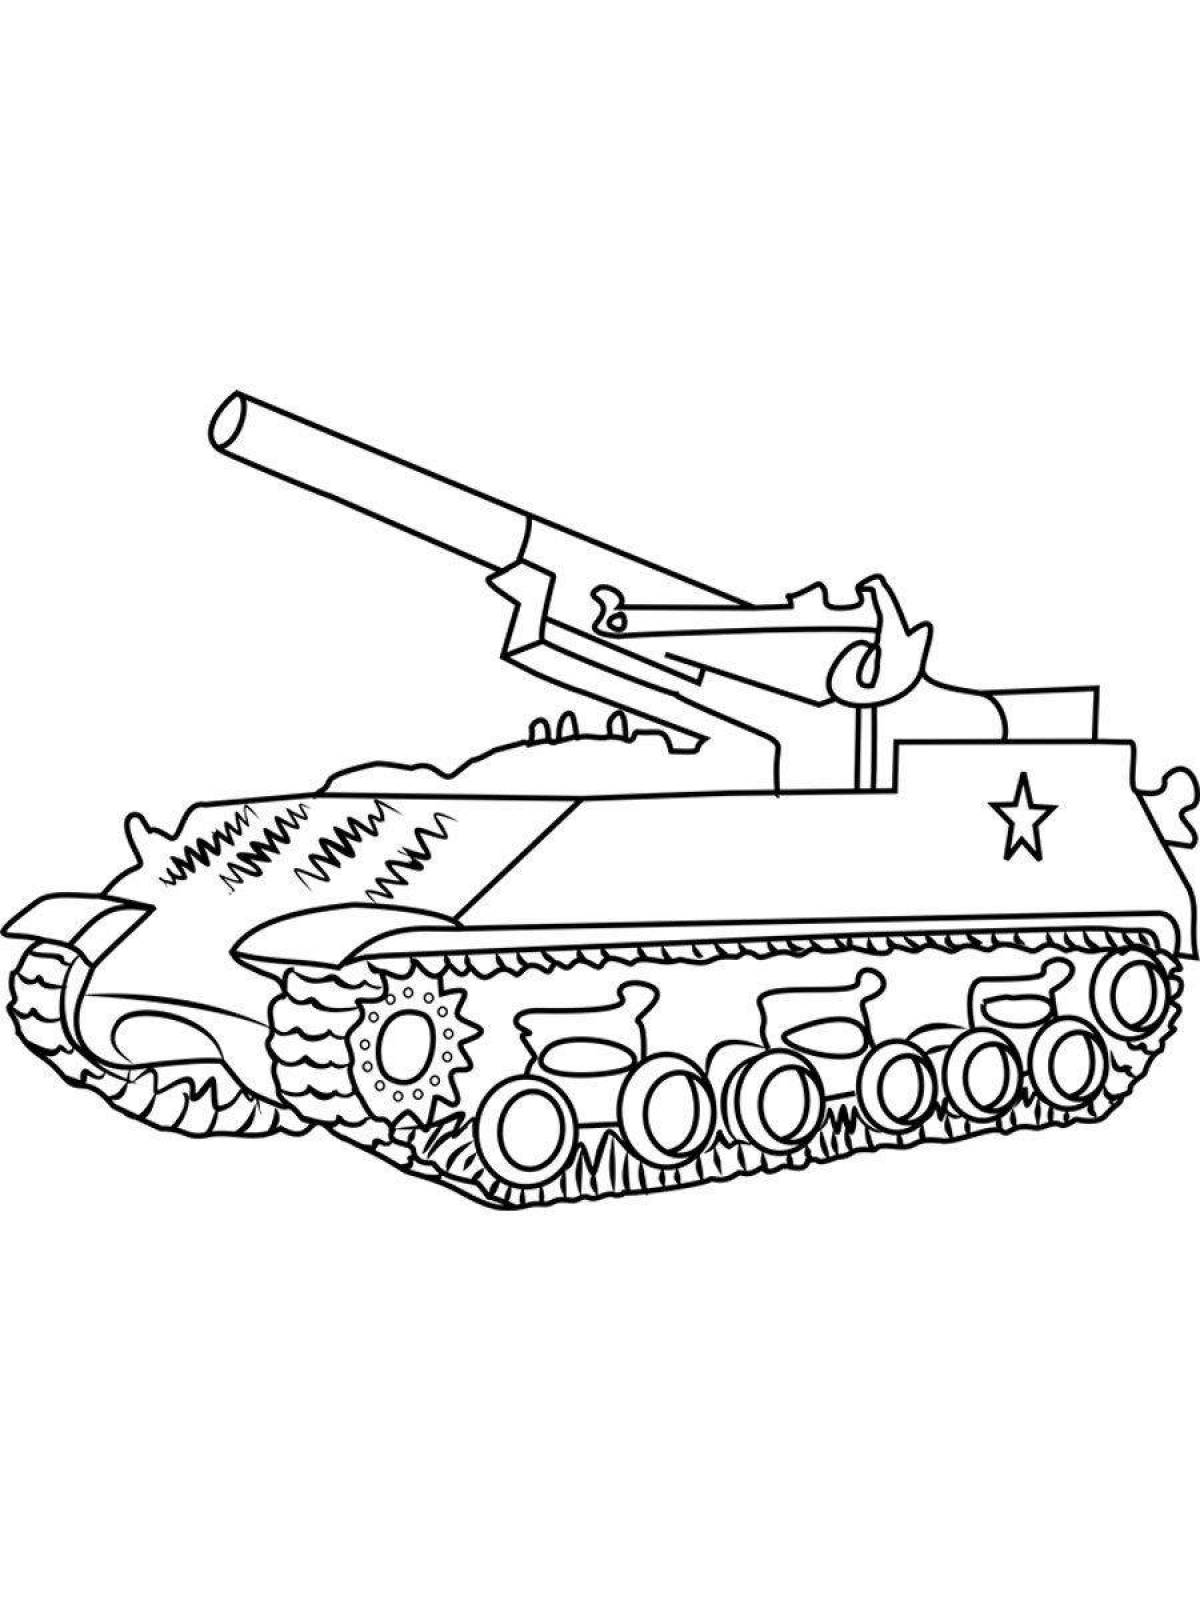 Раскраска очаровательный танк для детей 4-5 лет